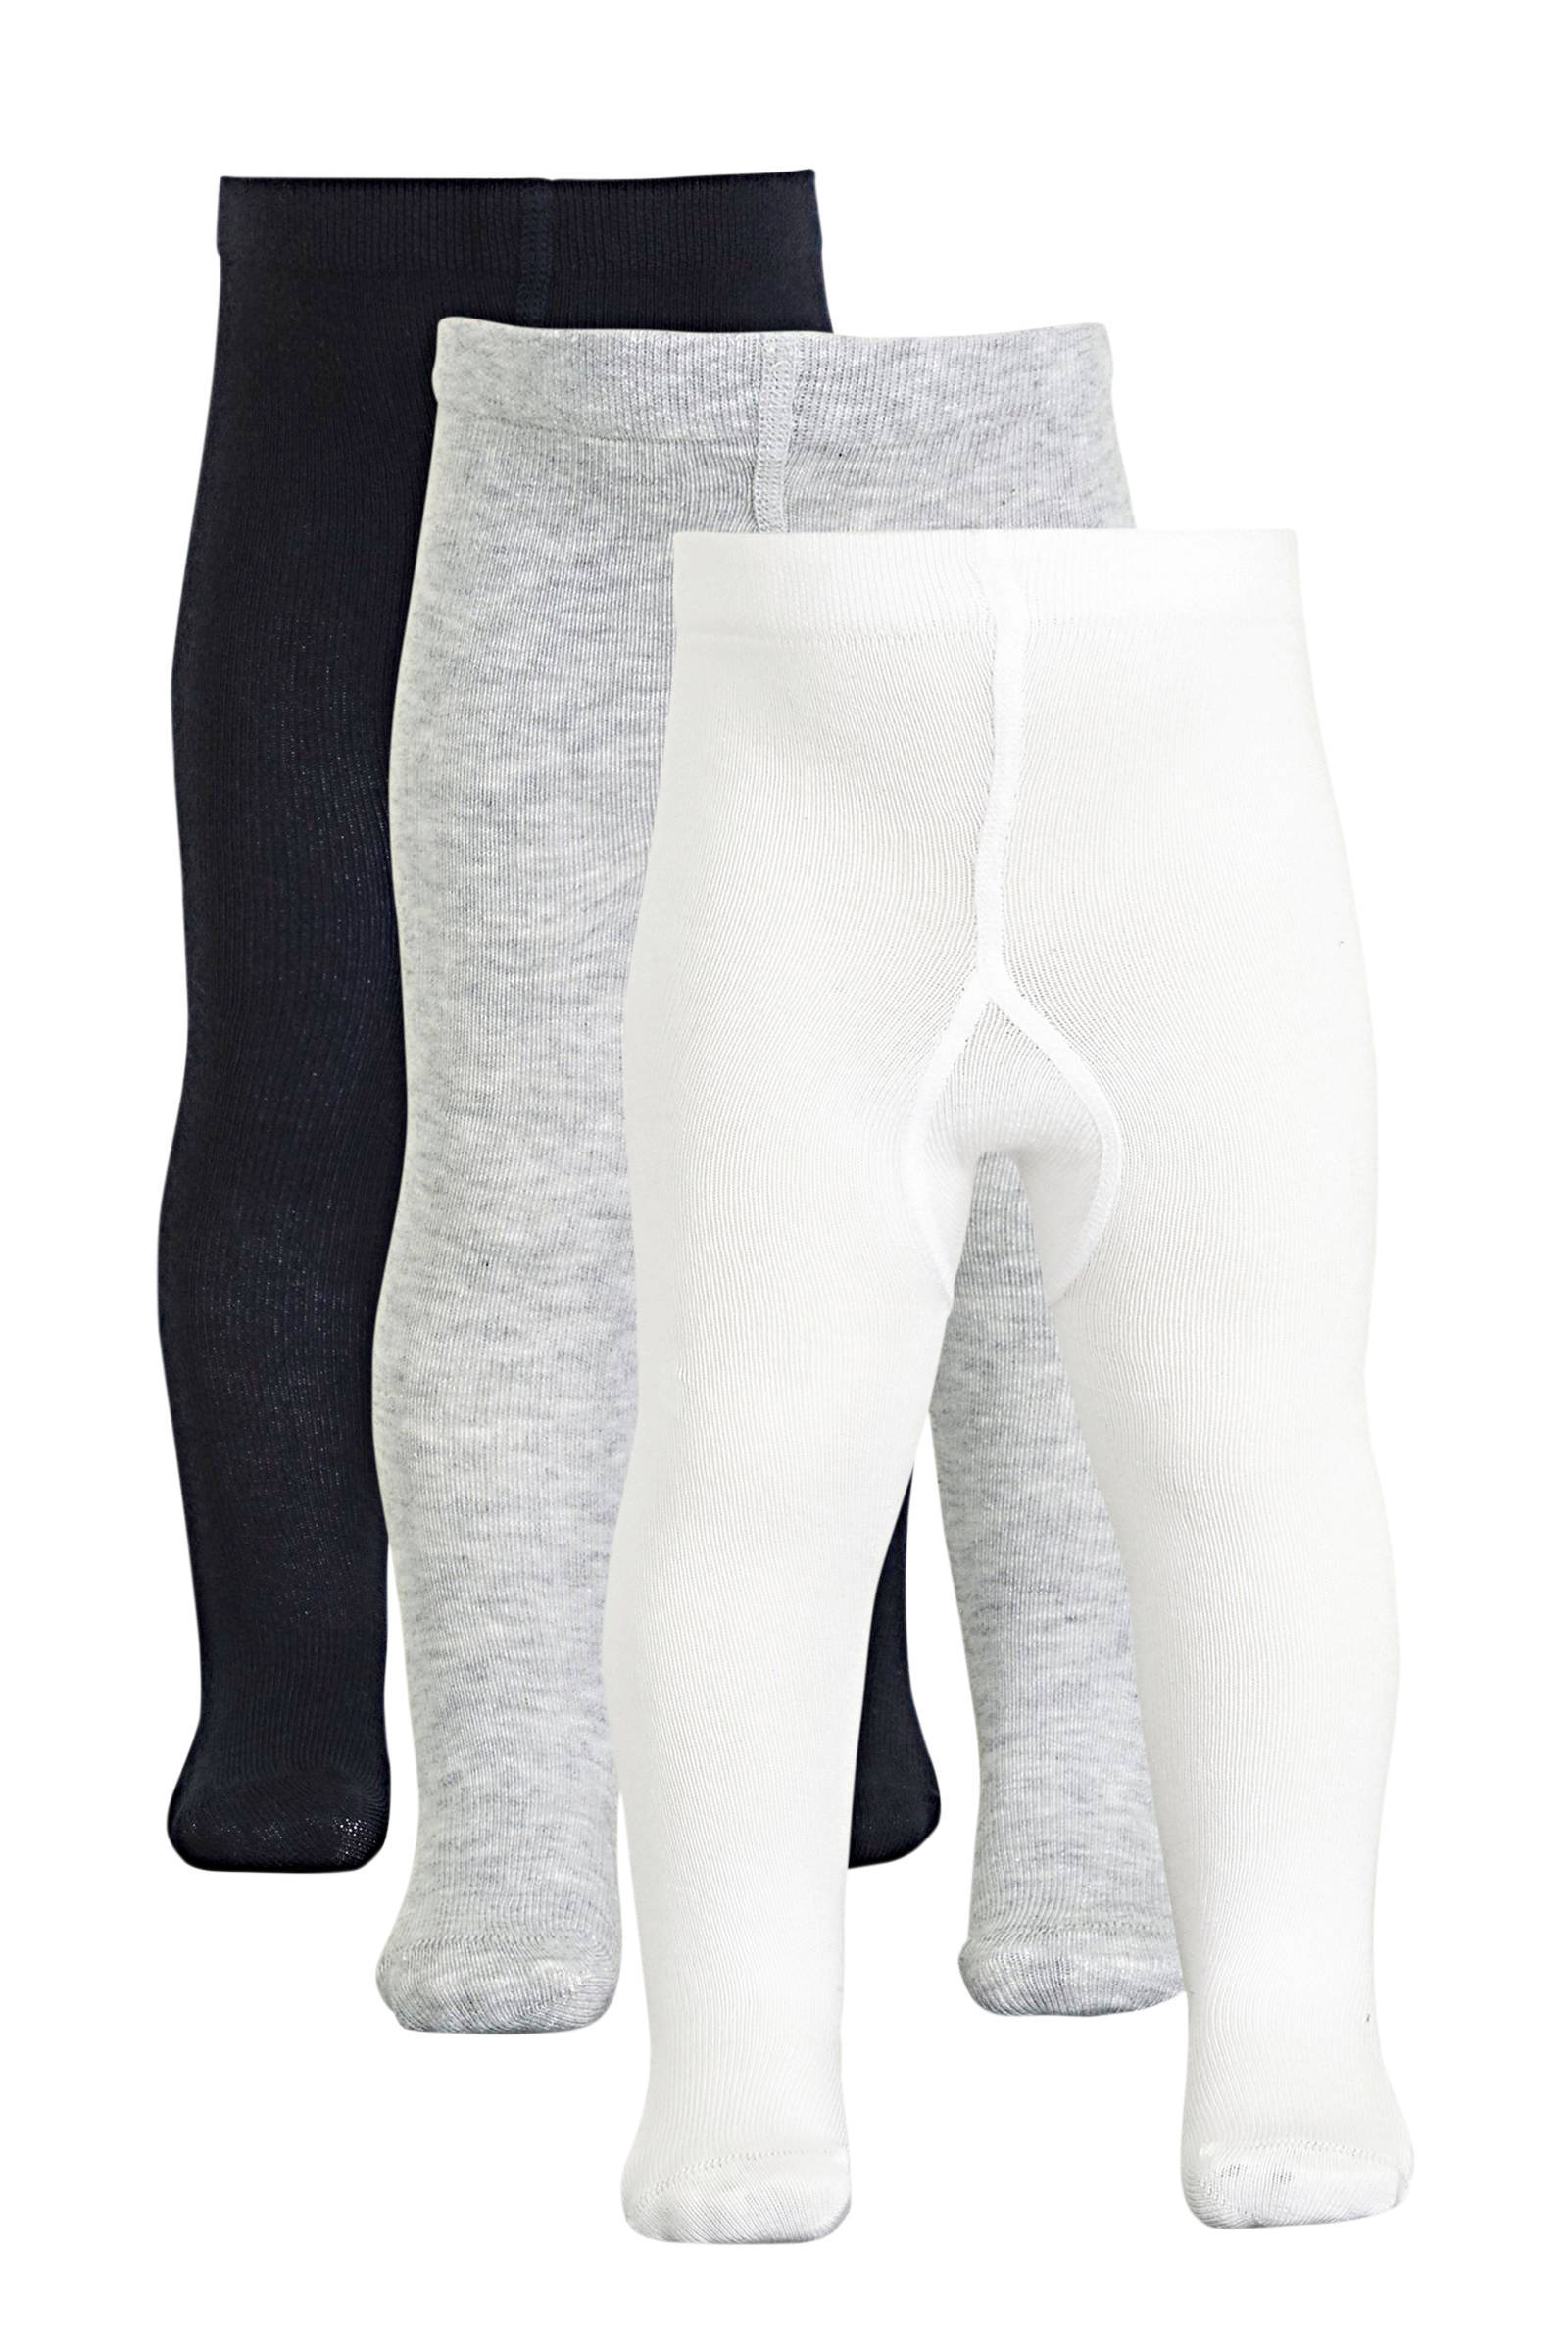 NAME IT BABY maillot set van 3 wit/grijs/donkerblauw online kopen